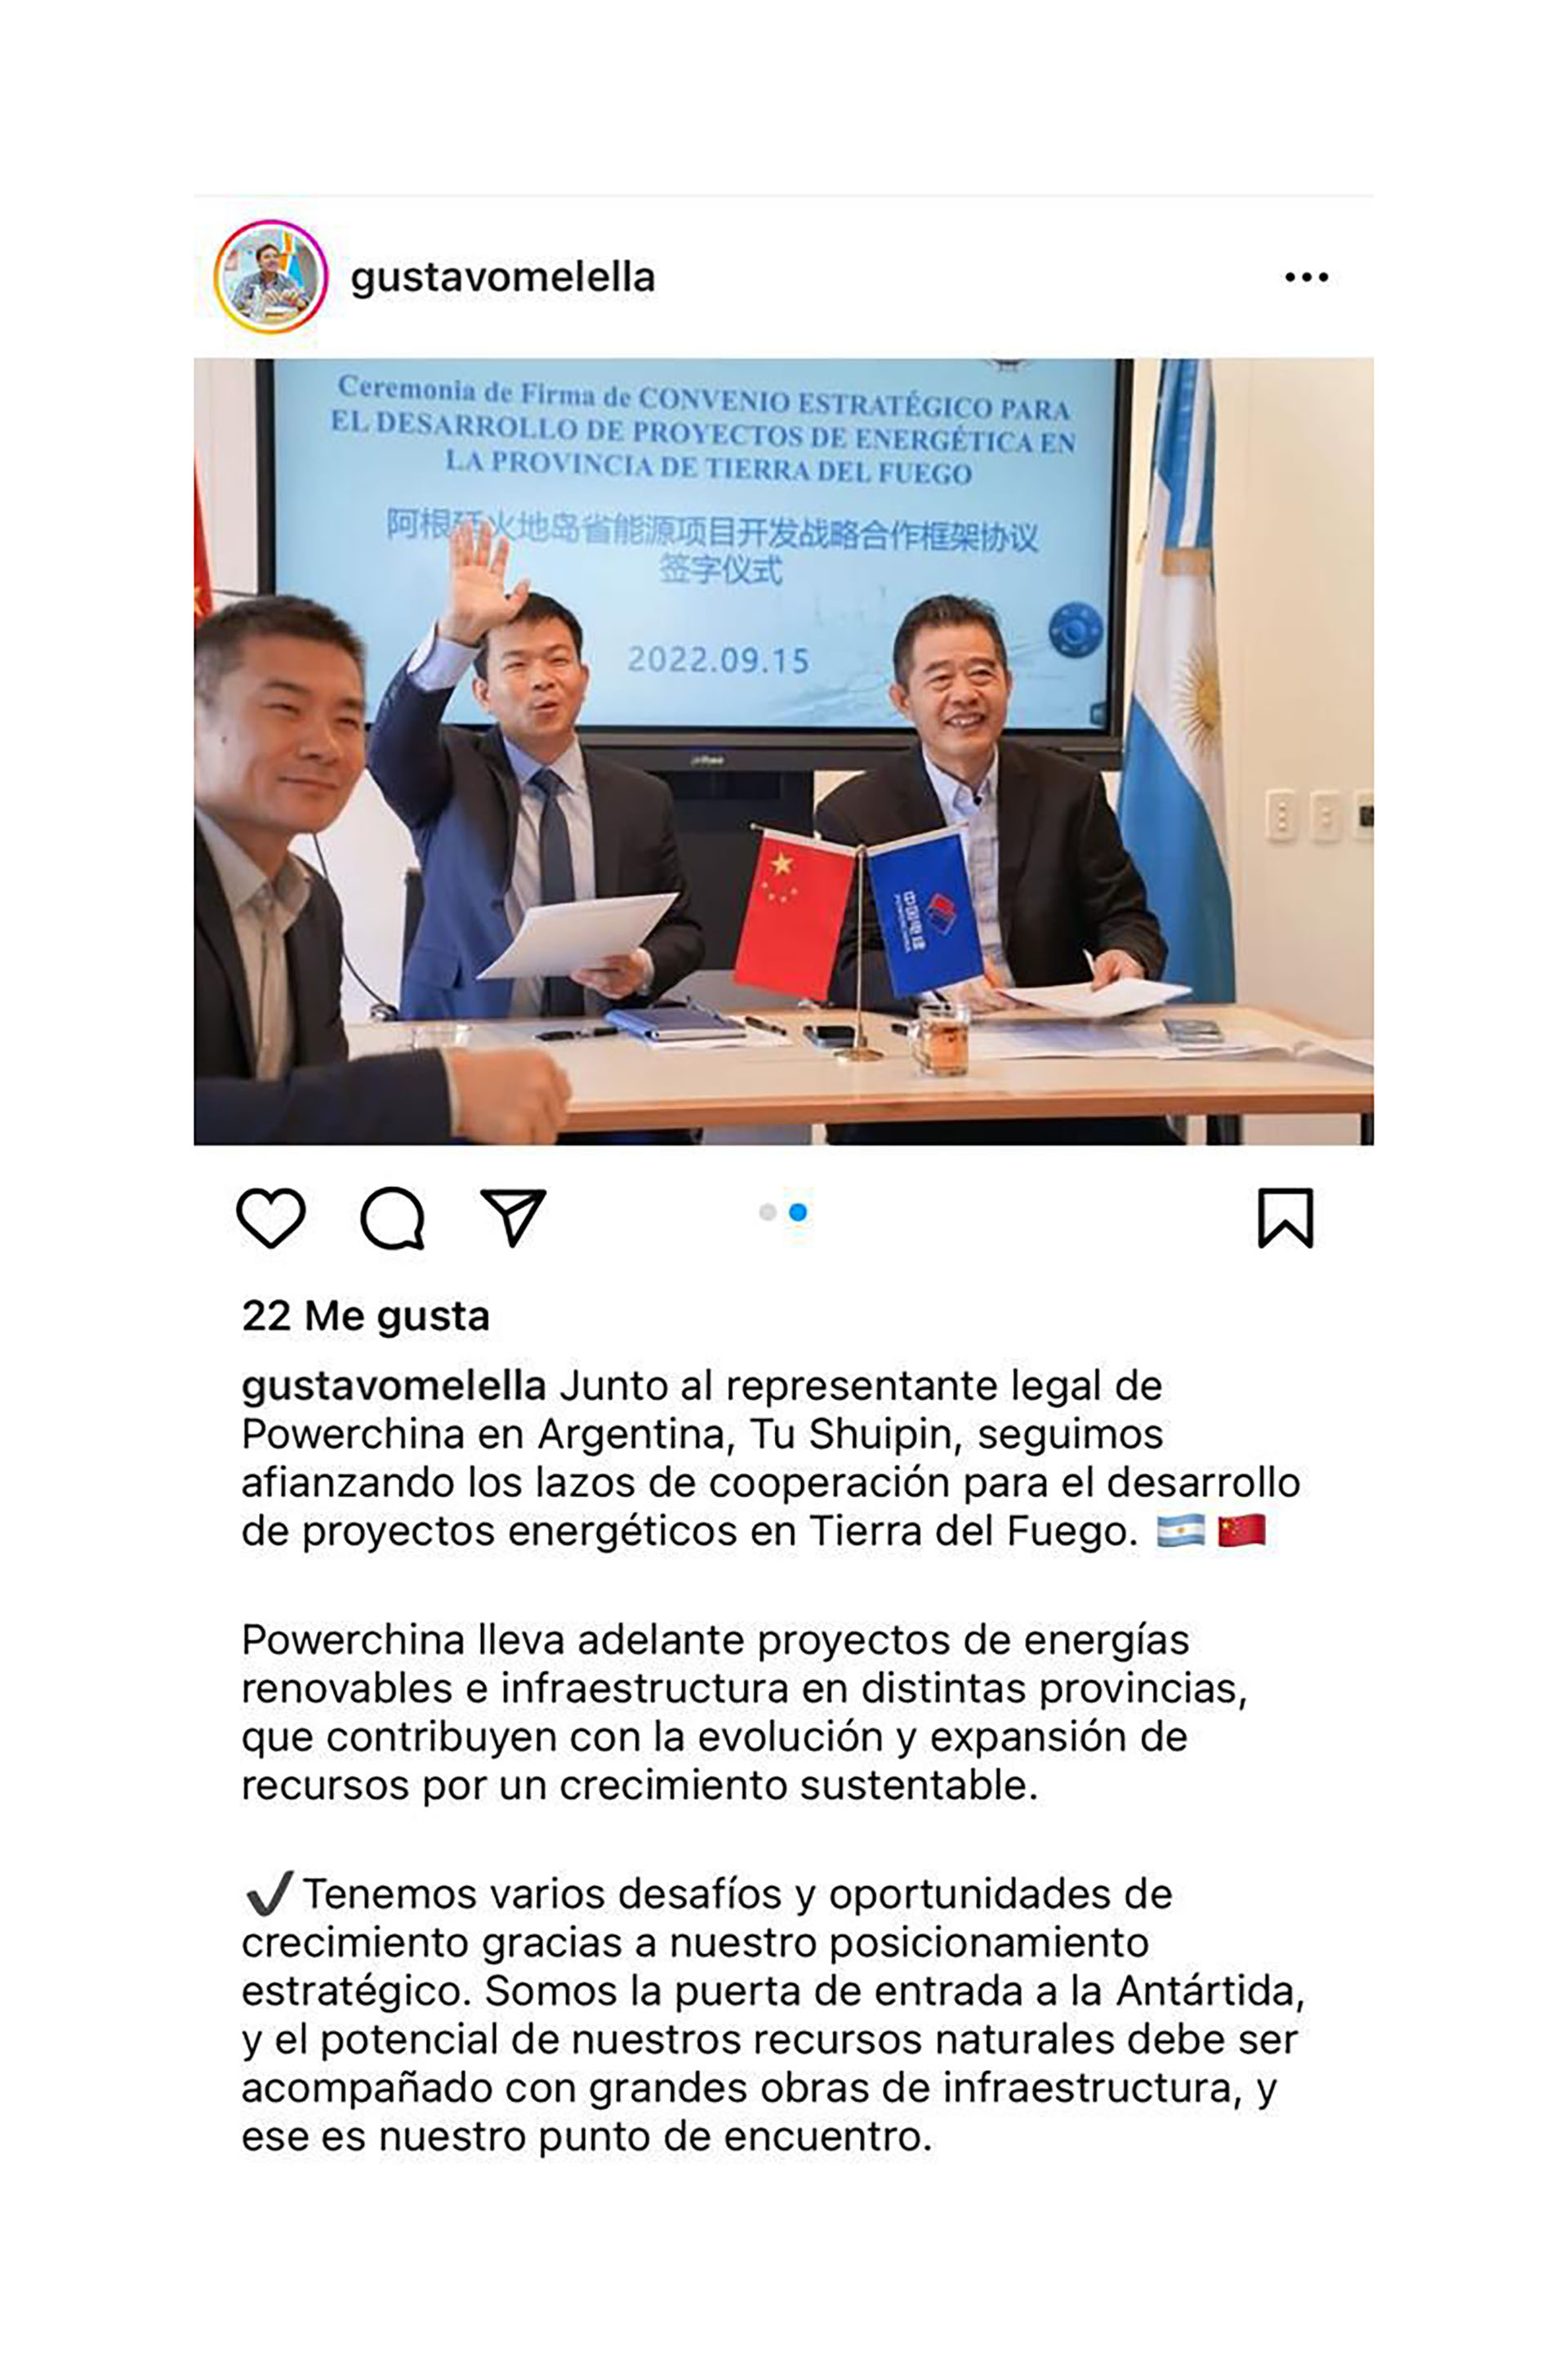 El gobernador de Tierra del Fuego, Gustavo Melella, feliz con la llegada de capitales asociados al régimen chino a la provincia (Instagram)